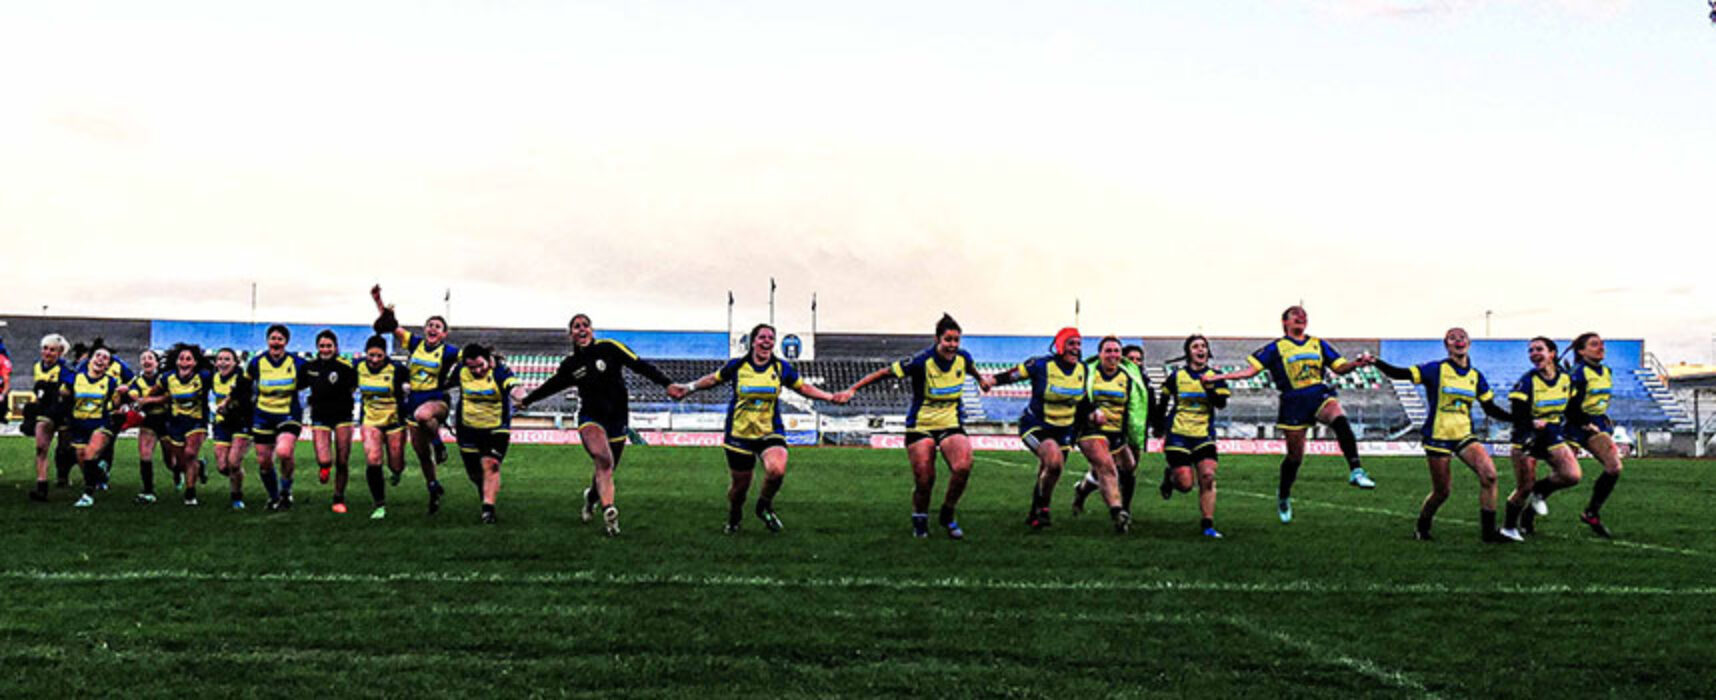 Impegno in terra capitolina per il Bisceglie Rugby